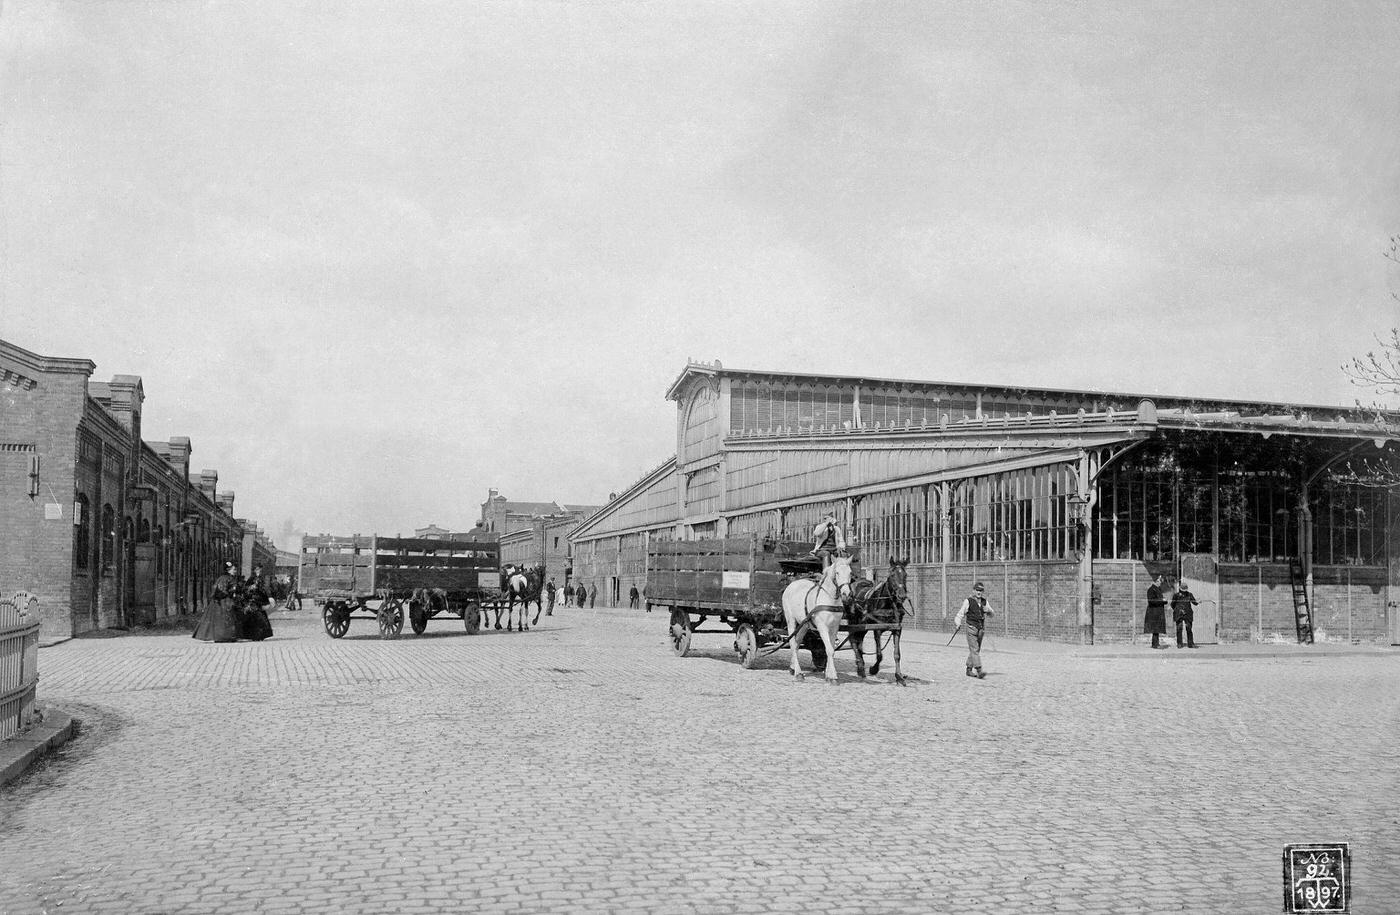 Zentralviehhof': Transport trolleys at the corral in Friedrichshain, Berlin, 1897